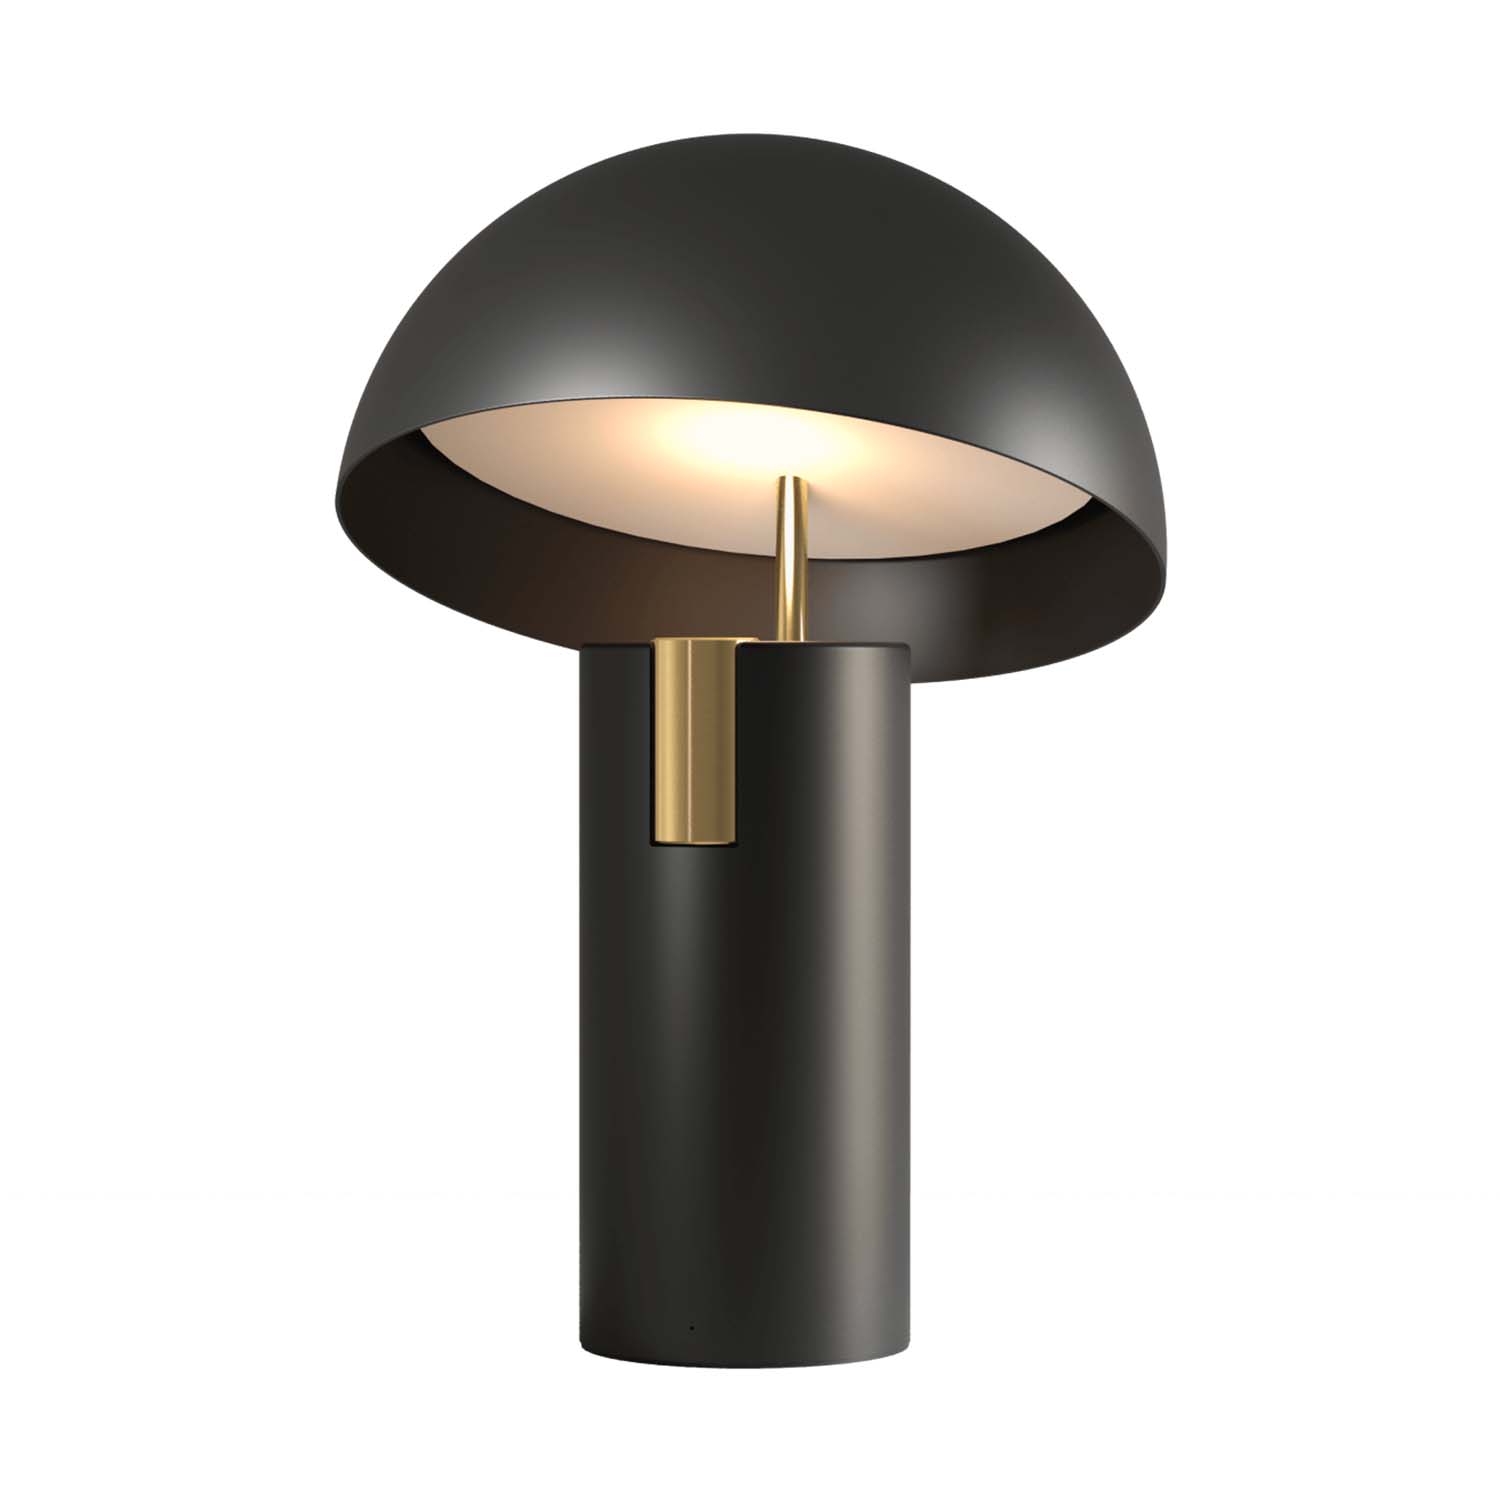 ALTO – Vernetzte Lampe für modernes Wohnzimmer